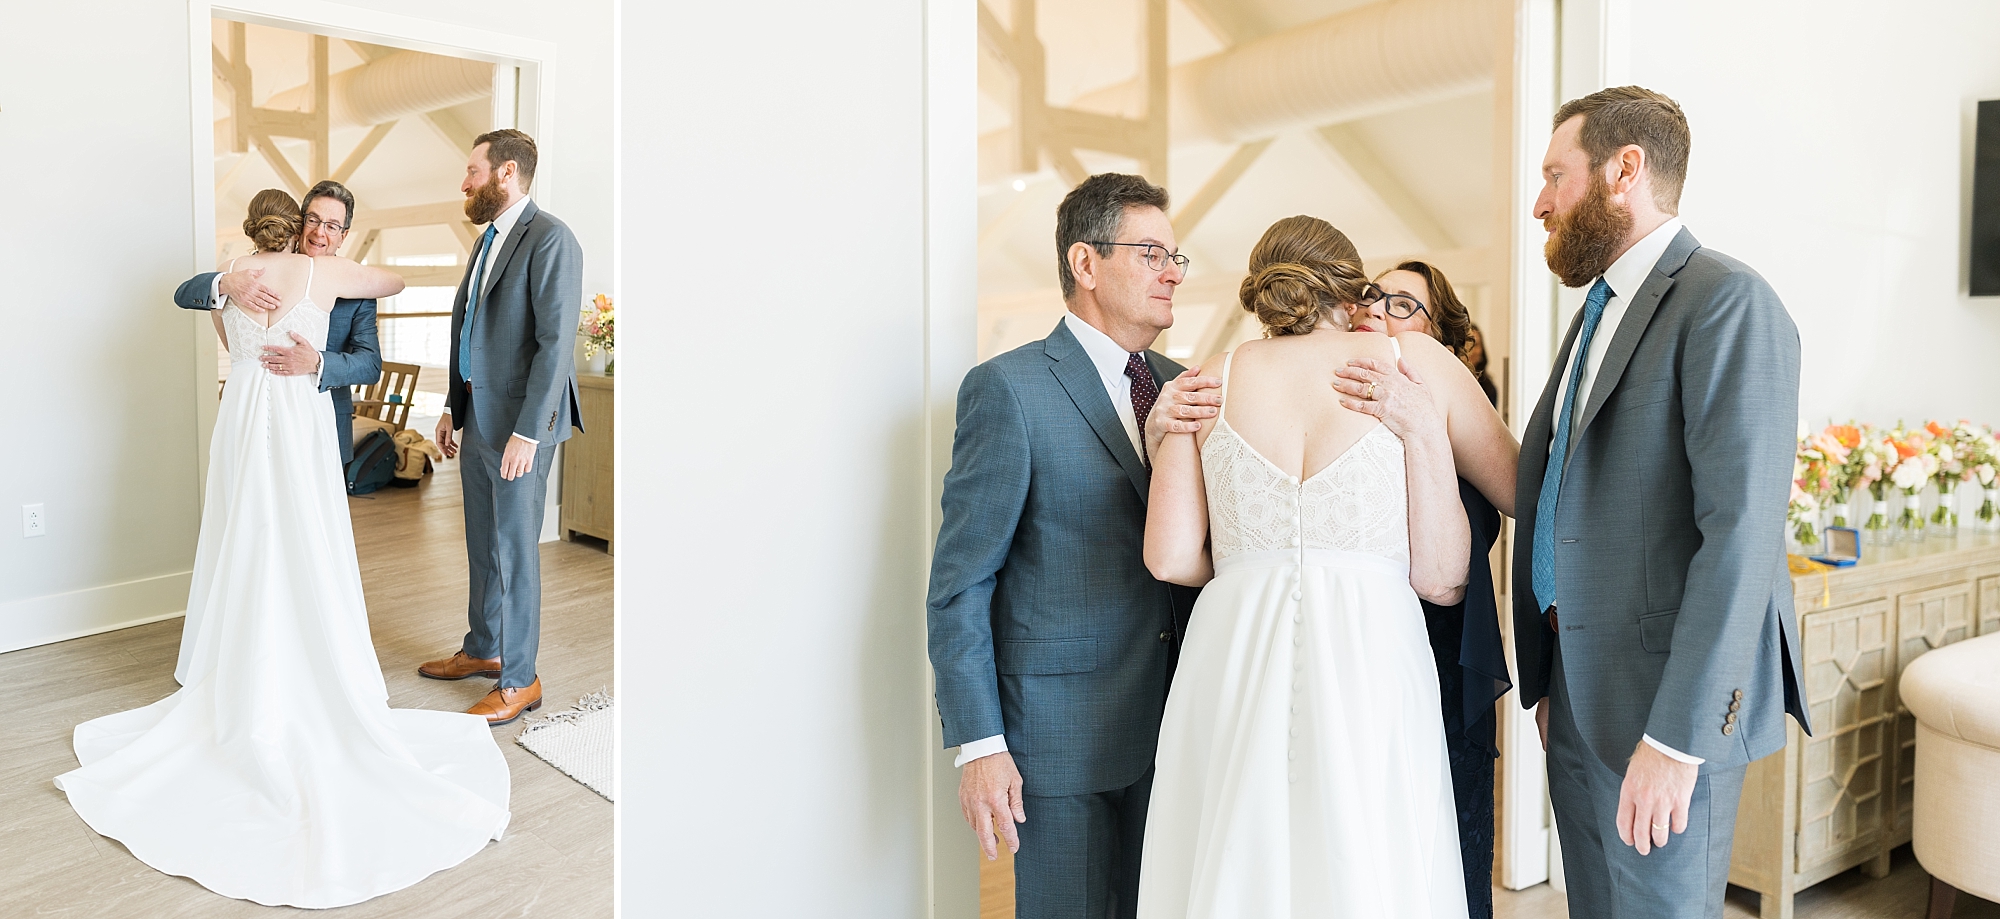 Carolina Grove Weddings | Raleigh NC Wedding Photographer | Sarah Hinckley Photography